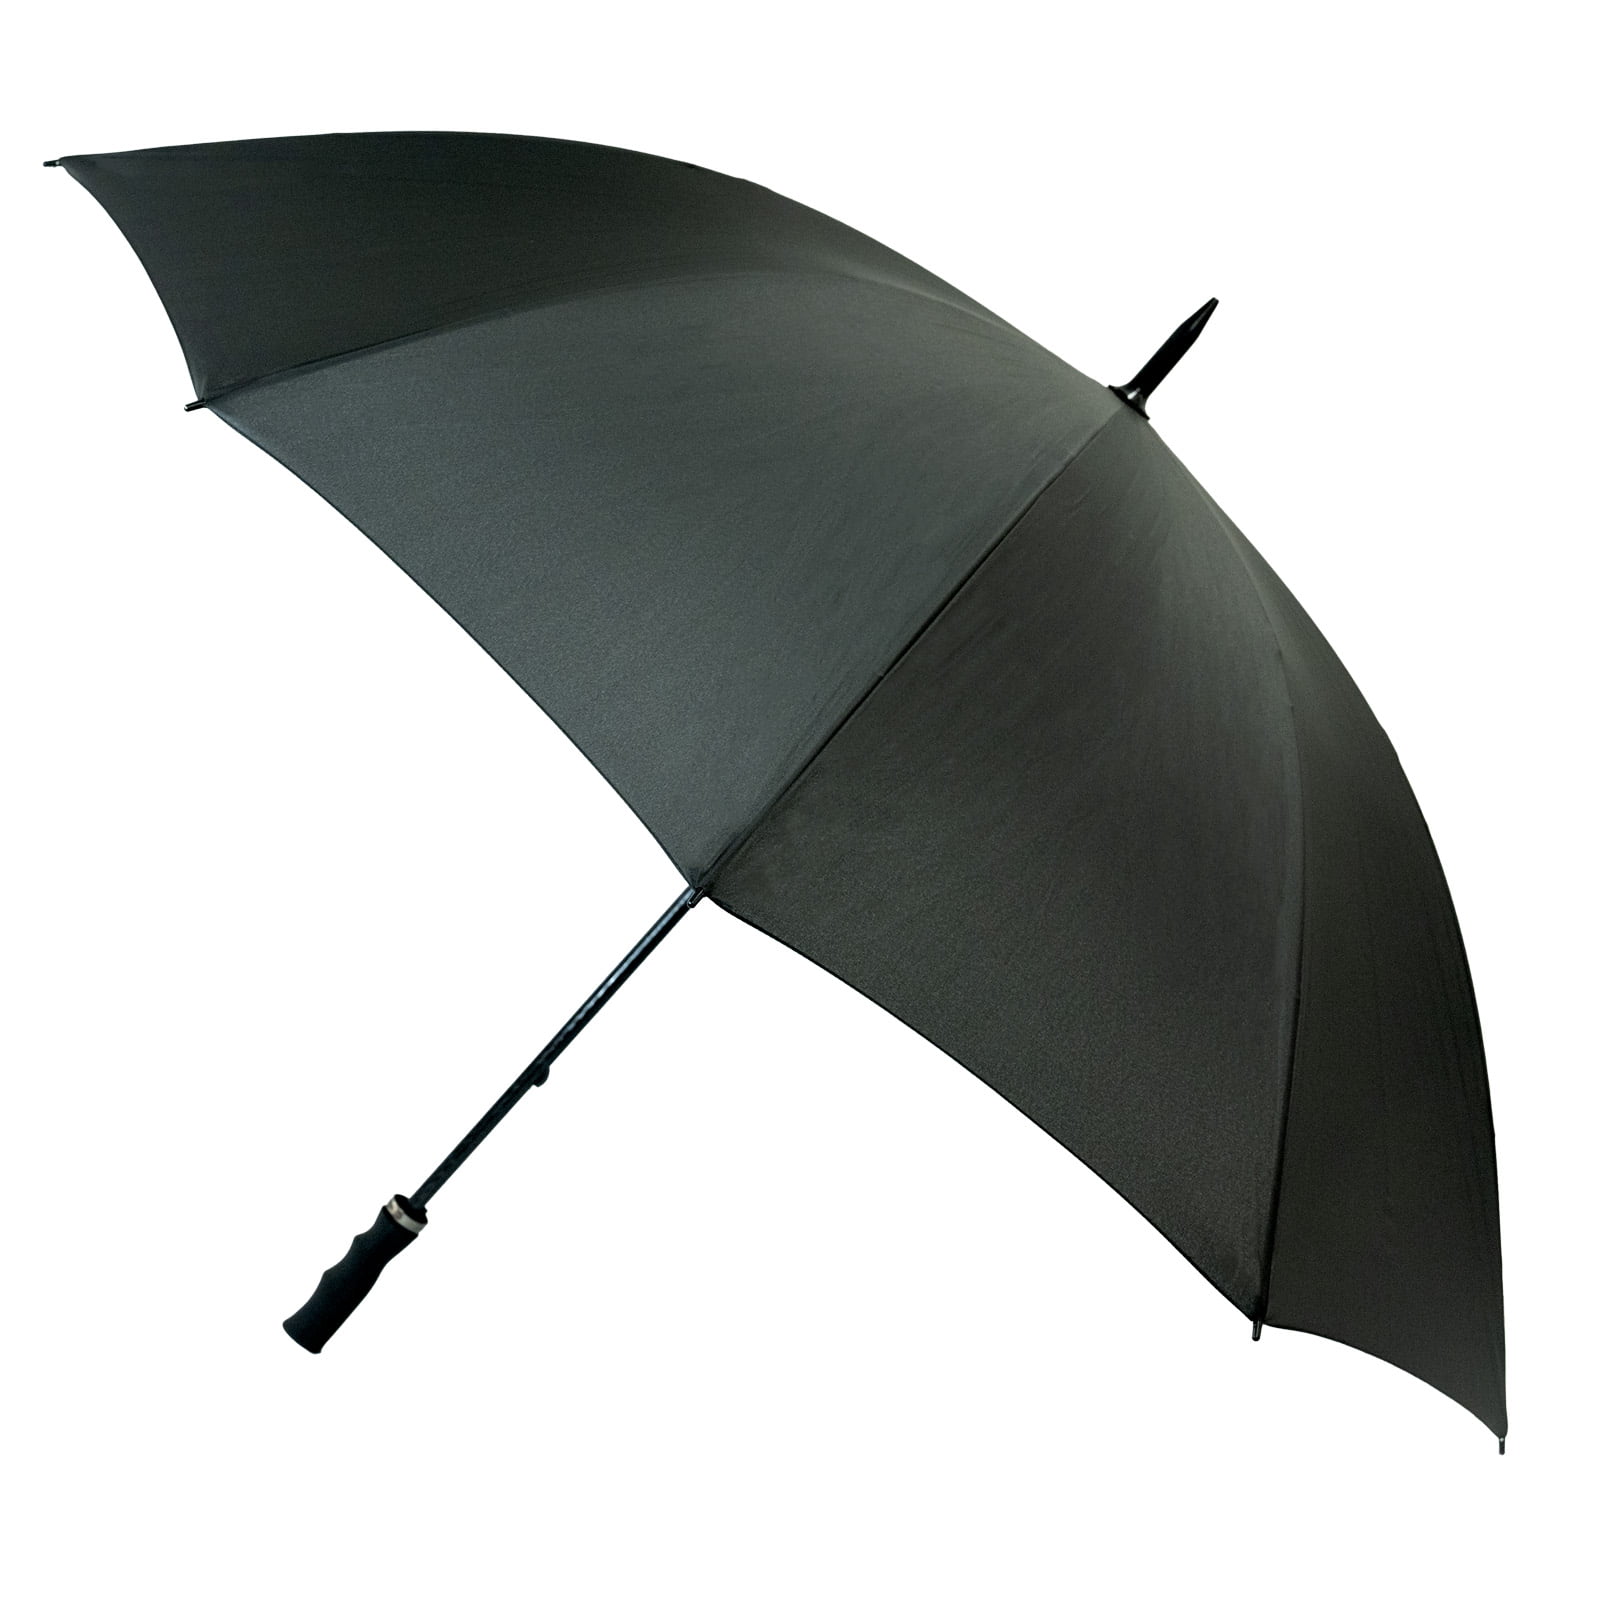 StormStar Windproof Black Golf Umbrella open